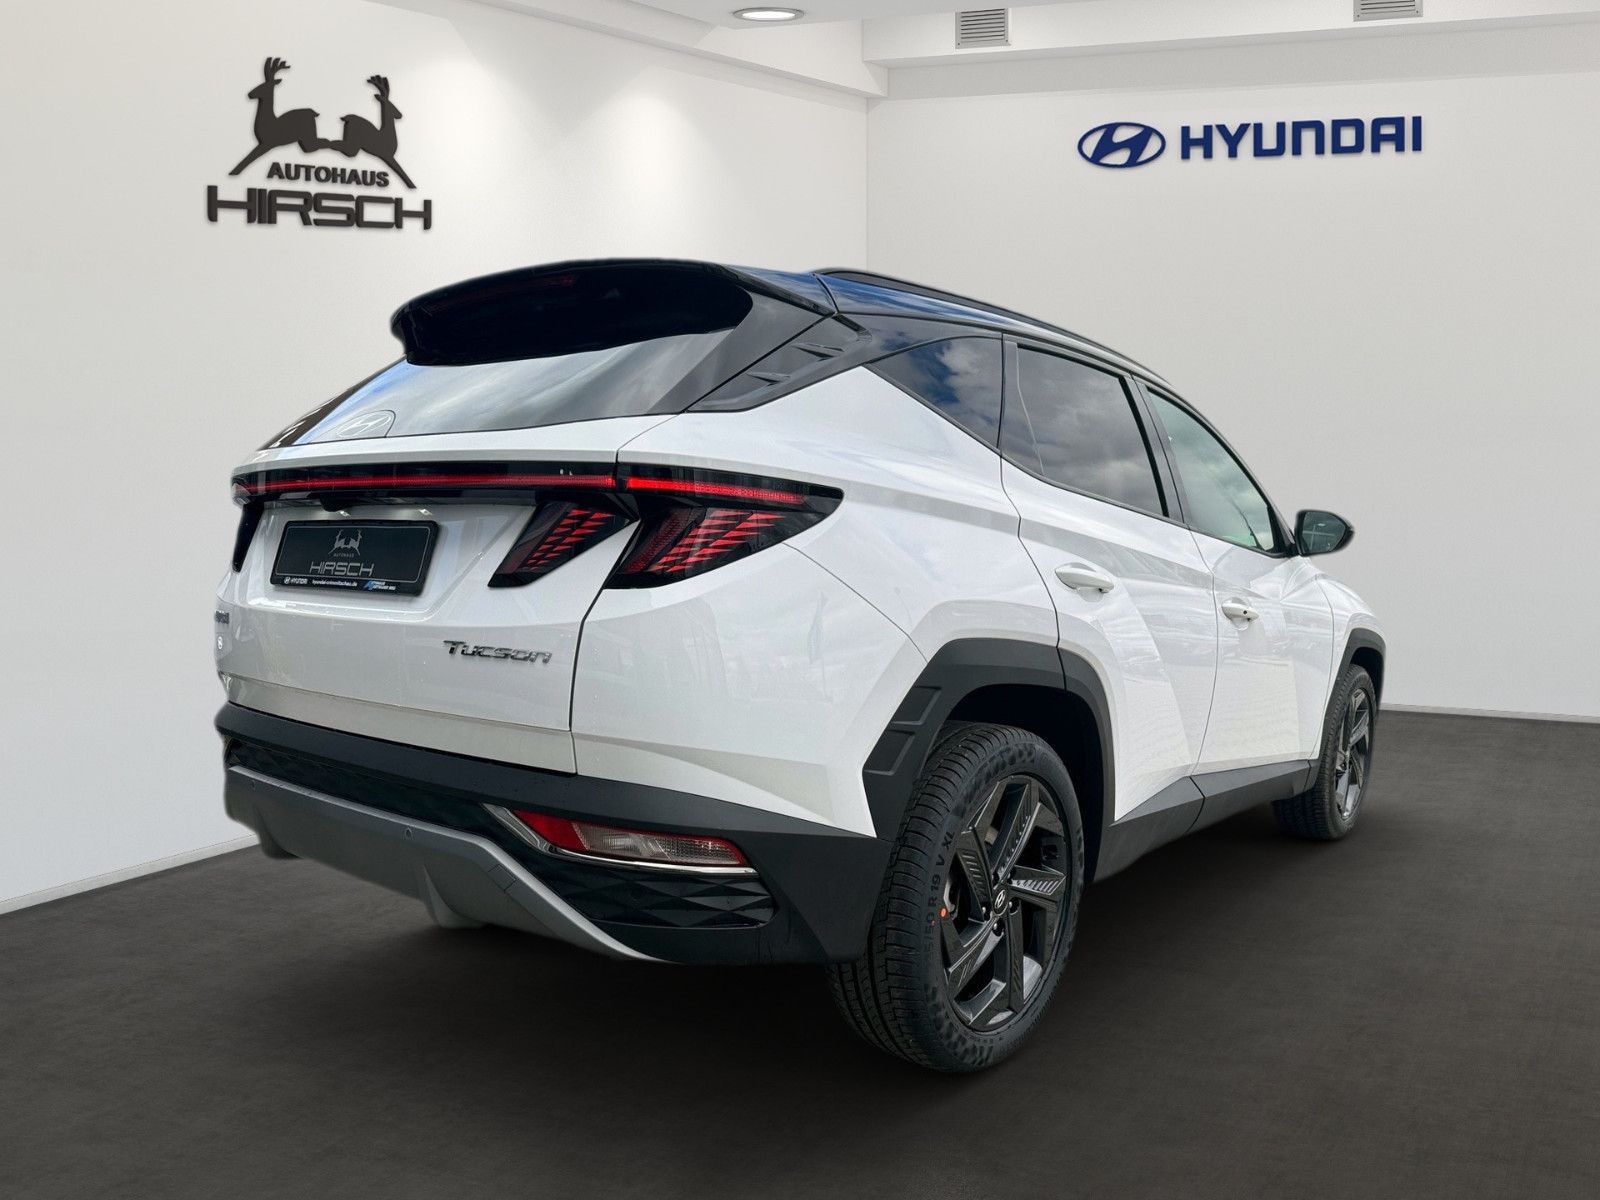 Fahrzeugabbildung Hyundai TUCSON Advantage 2WD 1.6 GDI Turbo 150PS M/T